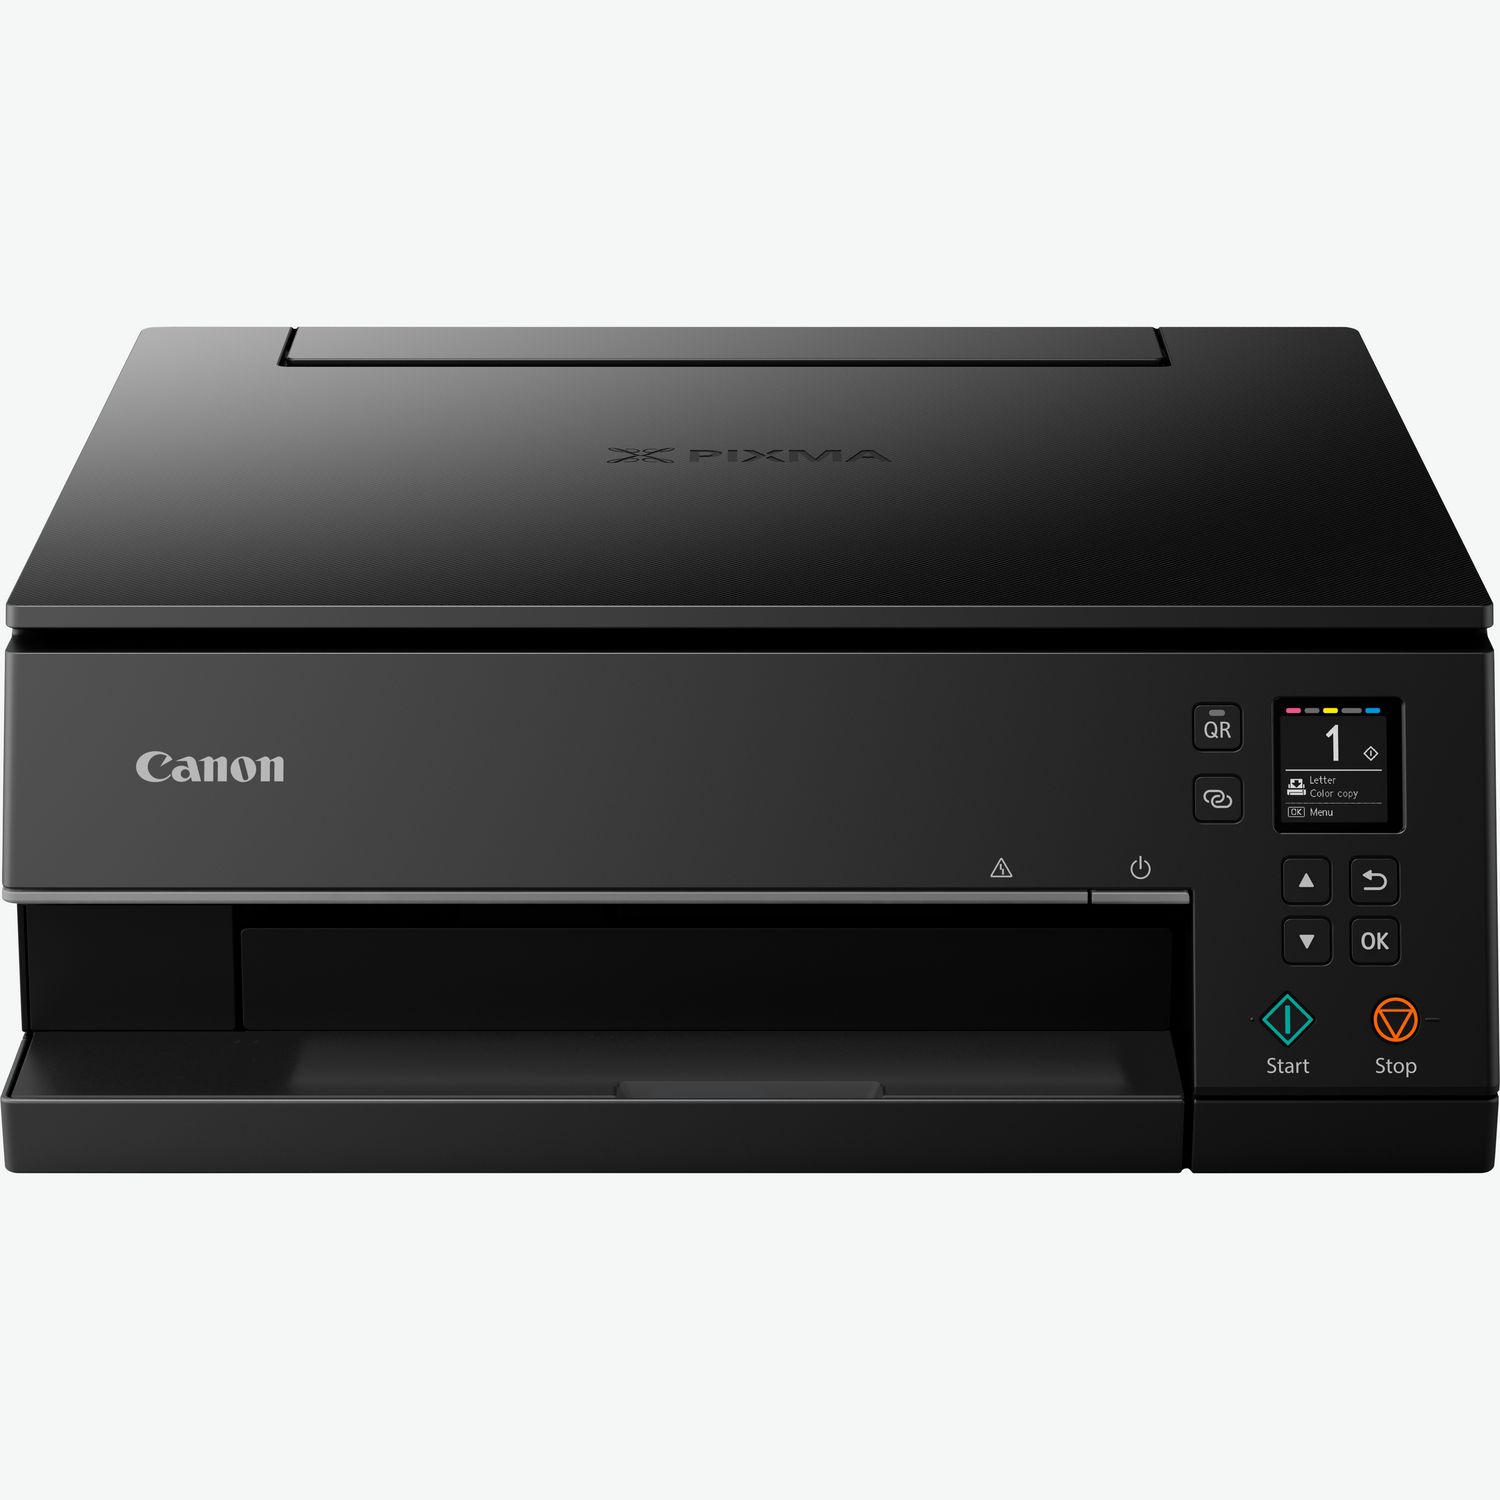 Canon PIXMA TS8350a Imprimante Recto Verso Design à 4 Cartouches séparées  WiFi et ETHERNET avec écran, Multifonction (imprimante Photo Maison Scan